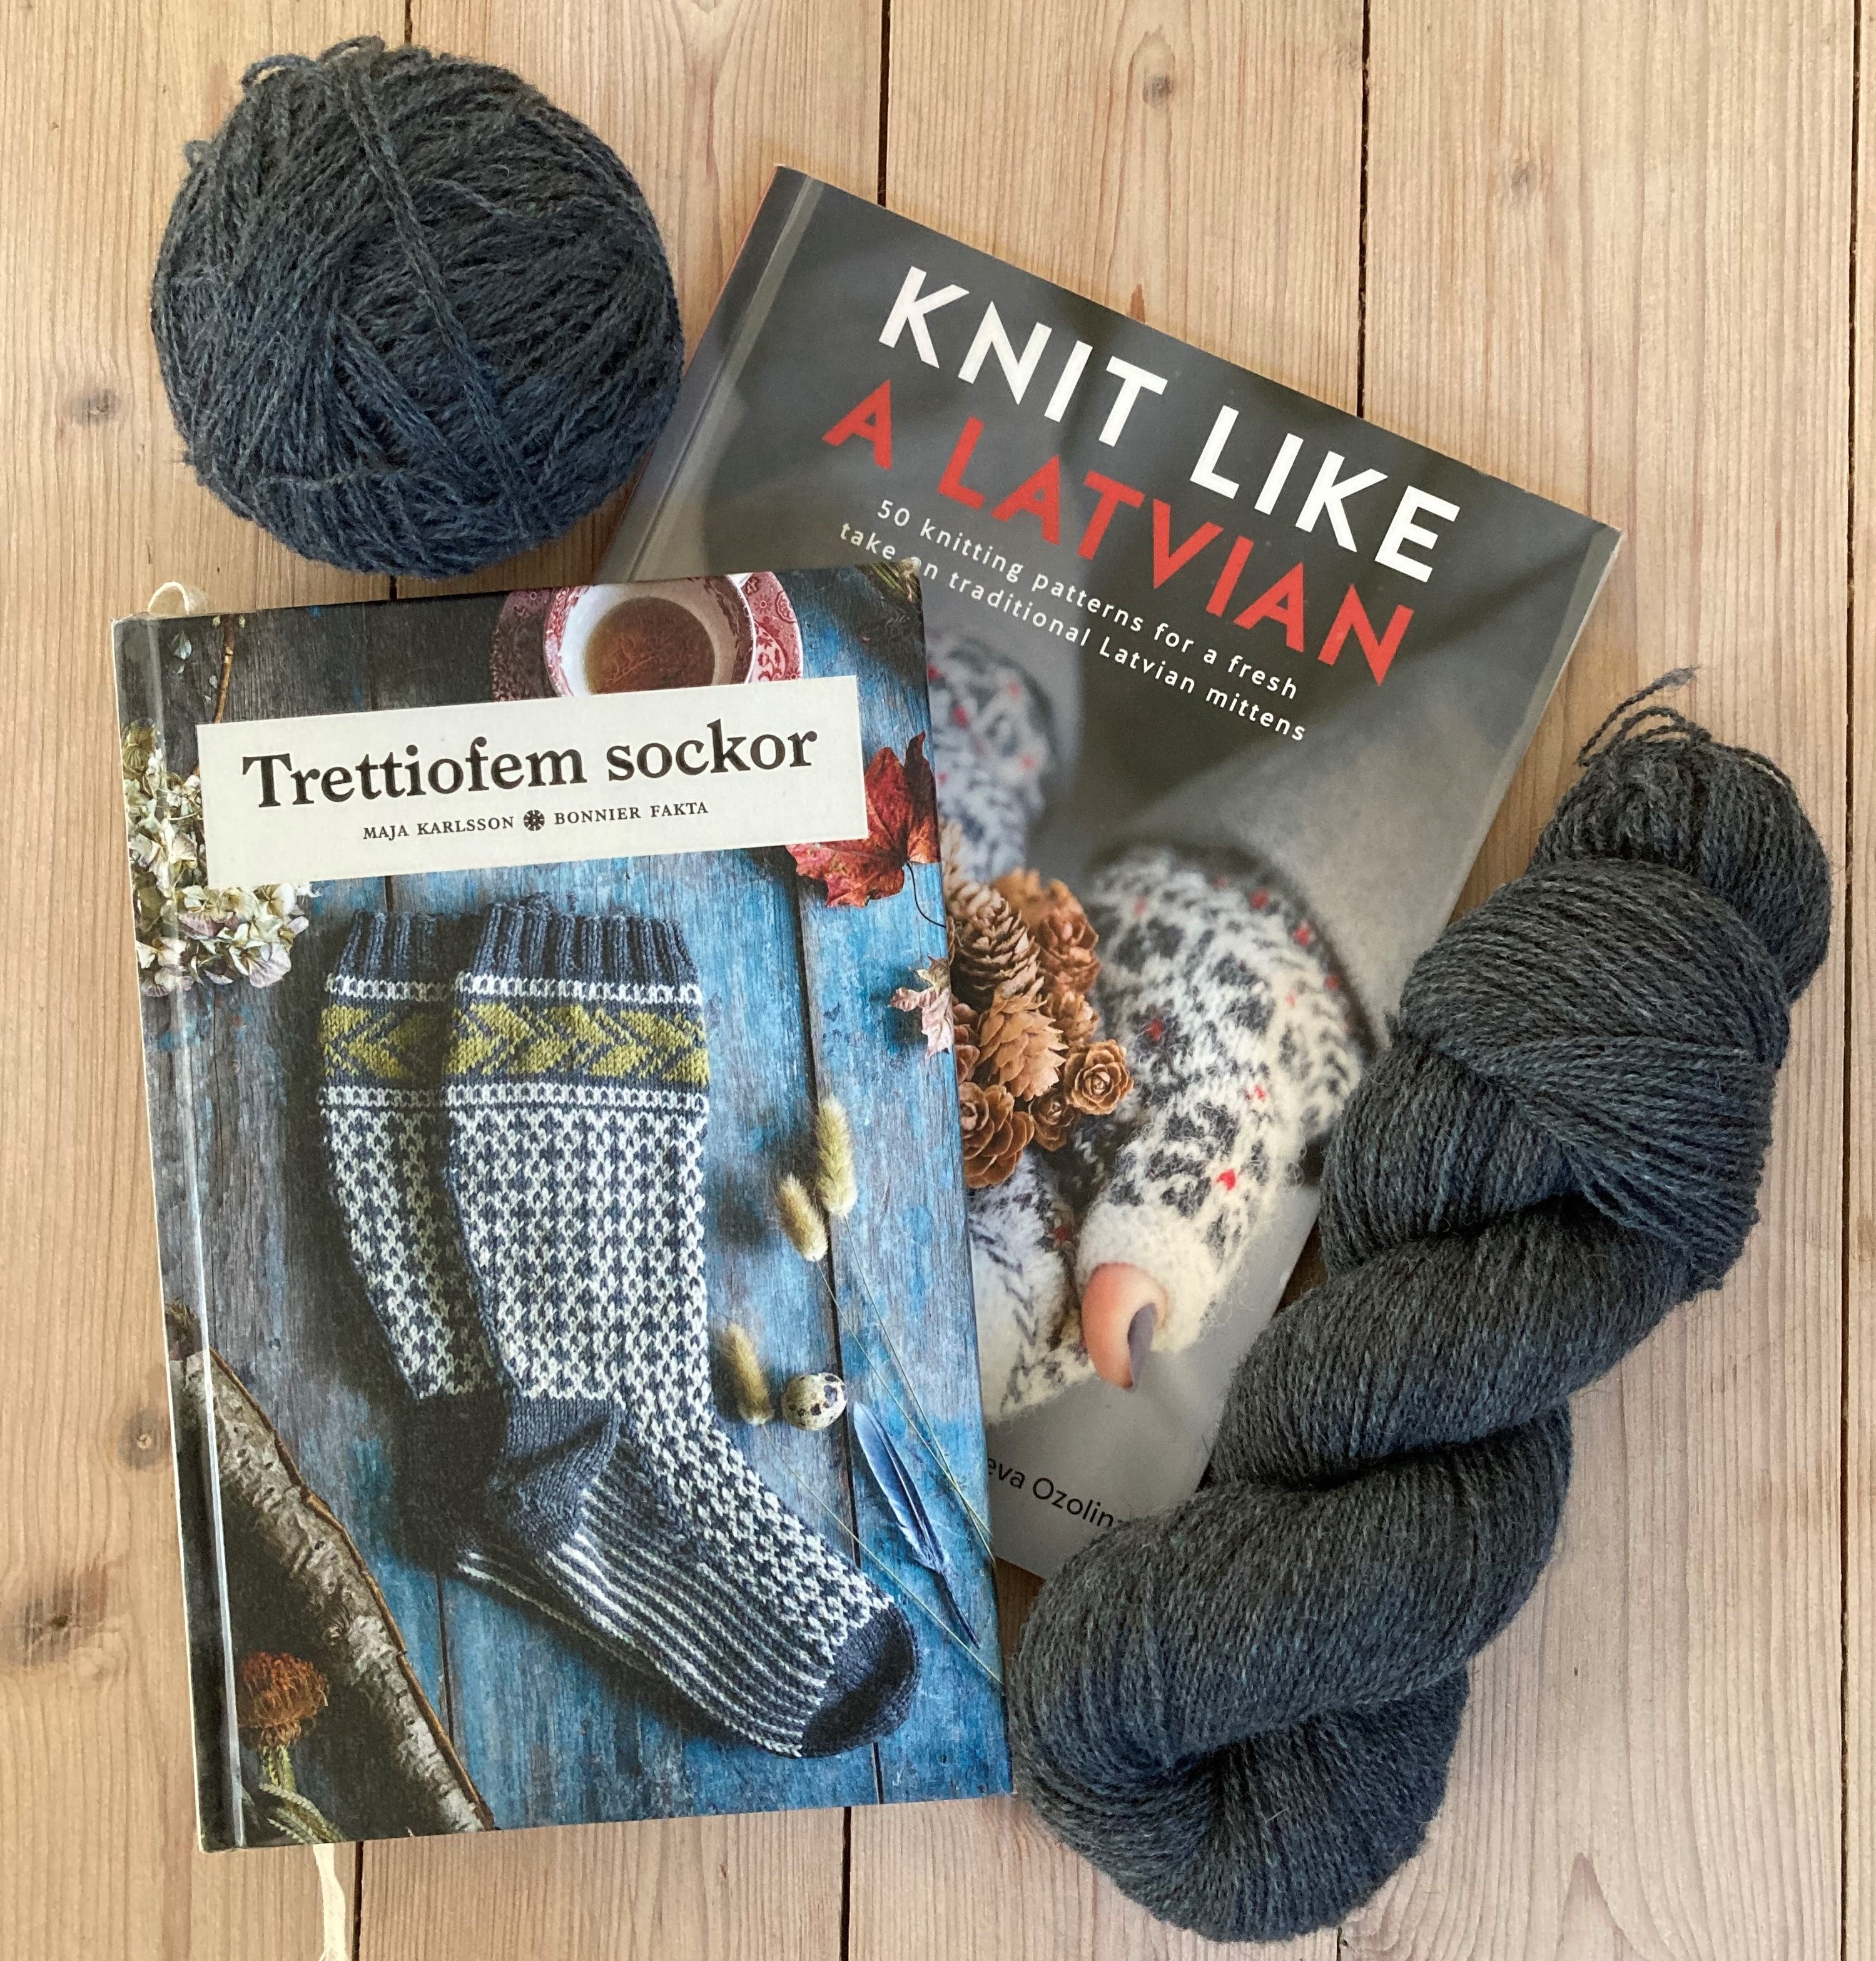 Efterår! - med strikketøjet hold varmen | AarhusBibliotekerne